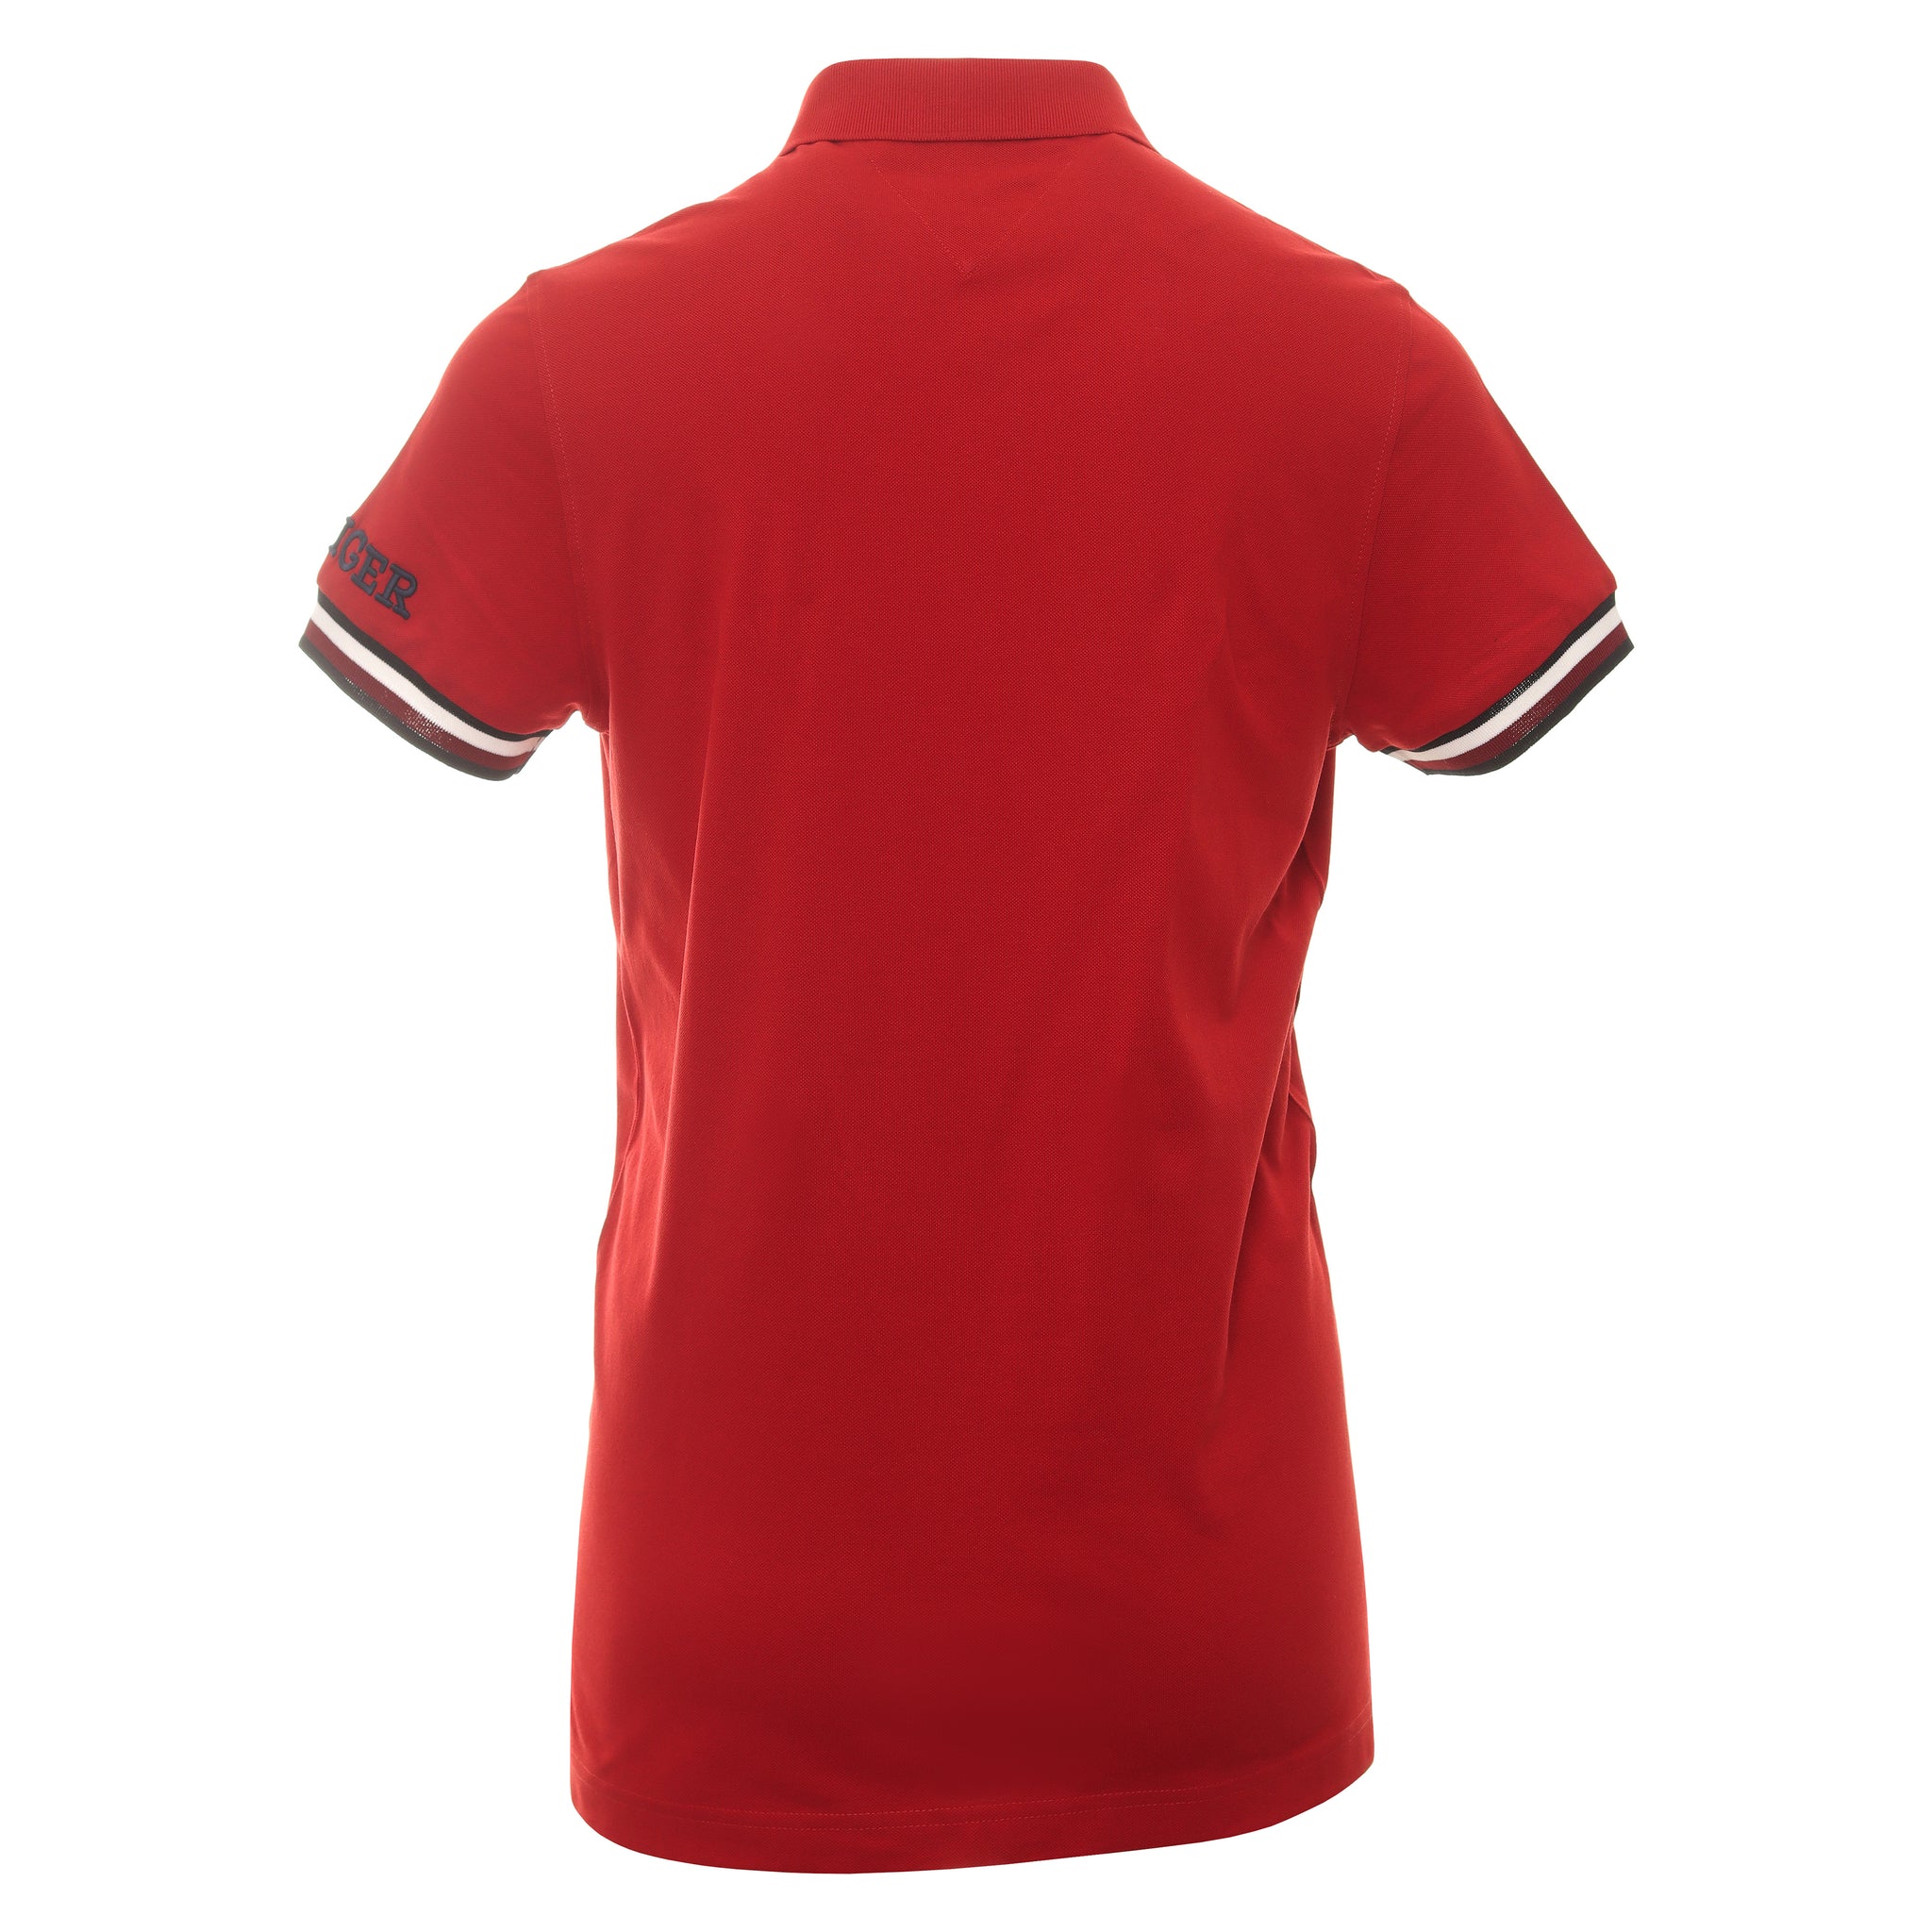 tommy-hilfiger-monotype-polo-shirt-mw0mw31549-arizona-red-xmp